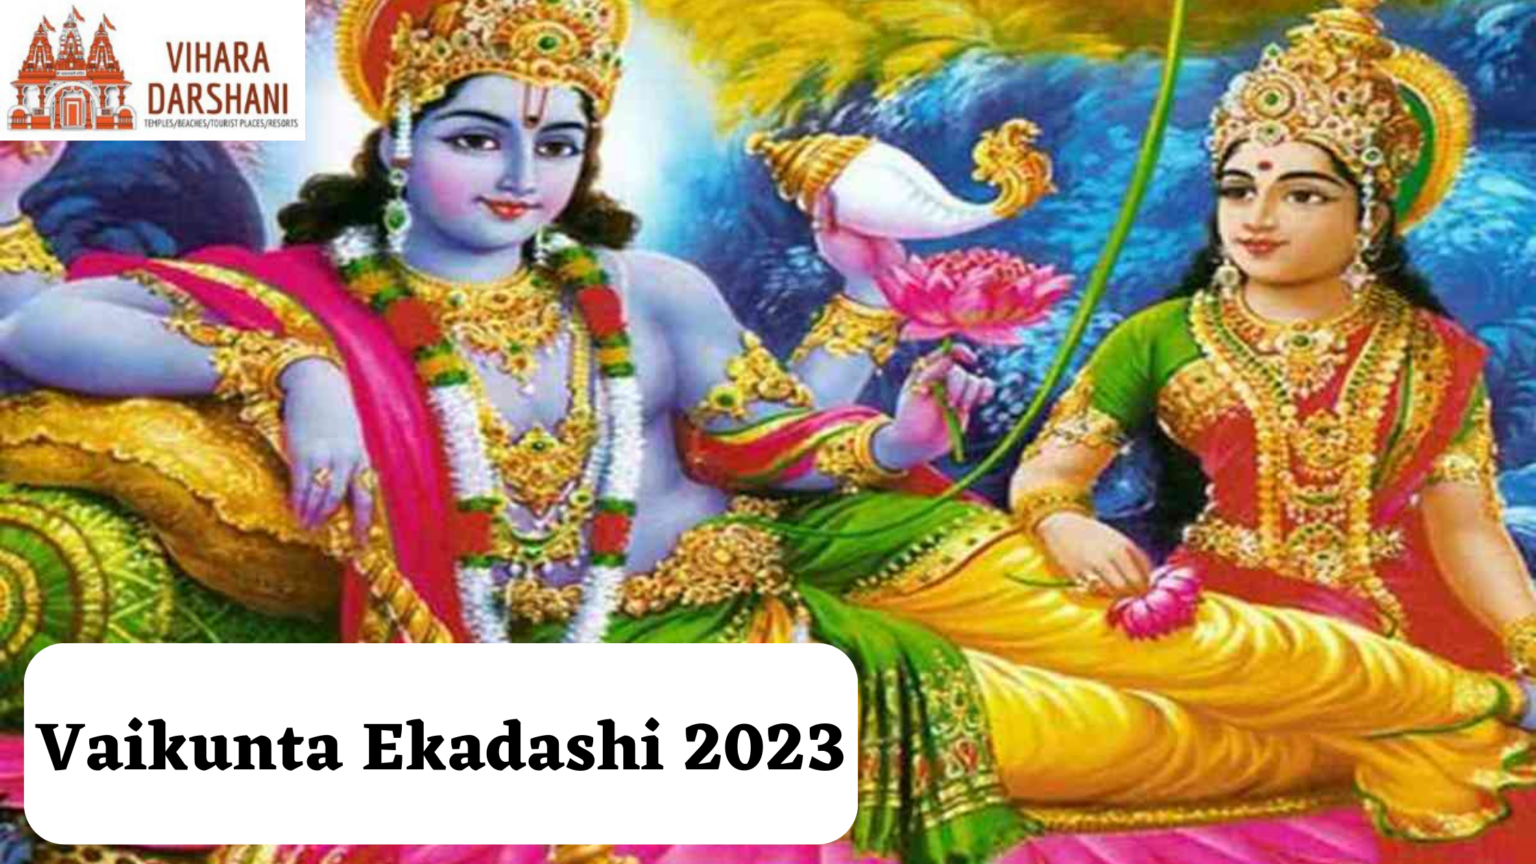 Vaikuntha Ekadashi Vaikuta Ekadasi 2023 Date, Timings, Vrat